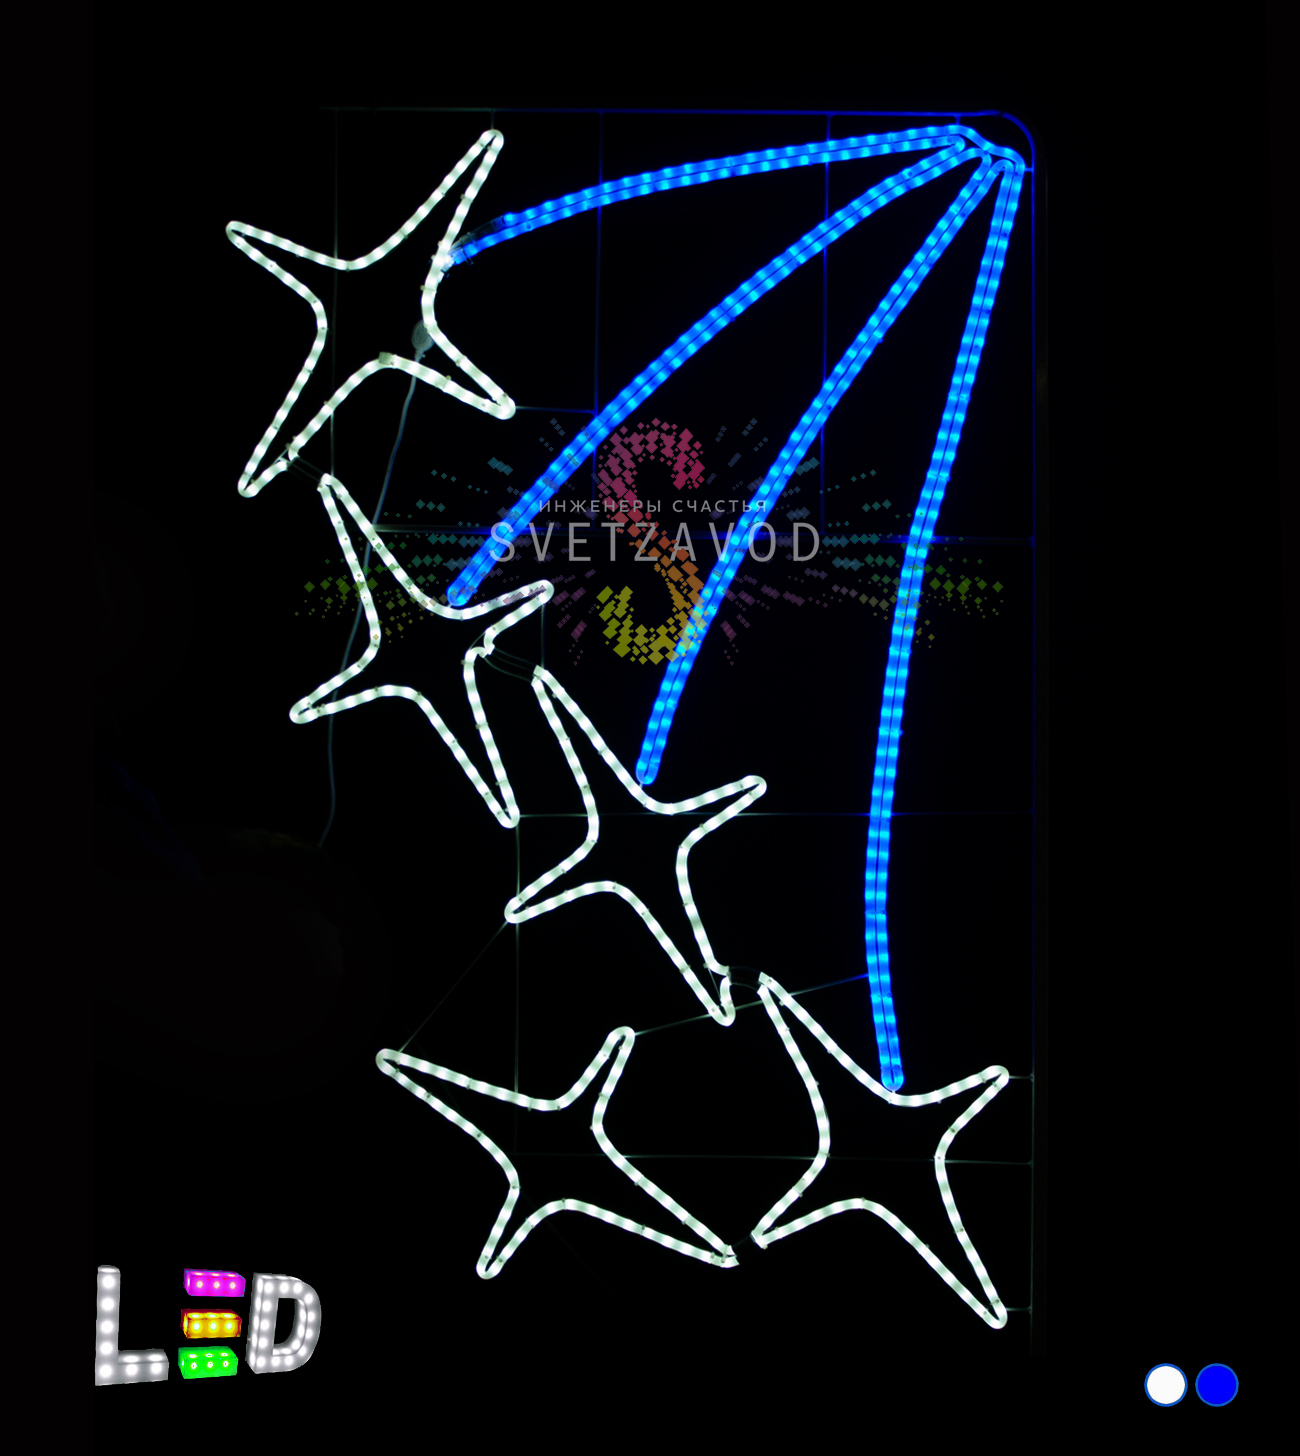 Светодиодная консоль "Звездная россыпь", 170х108 см, белая, синяя